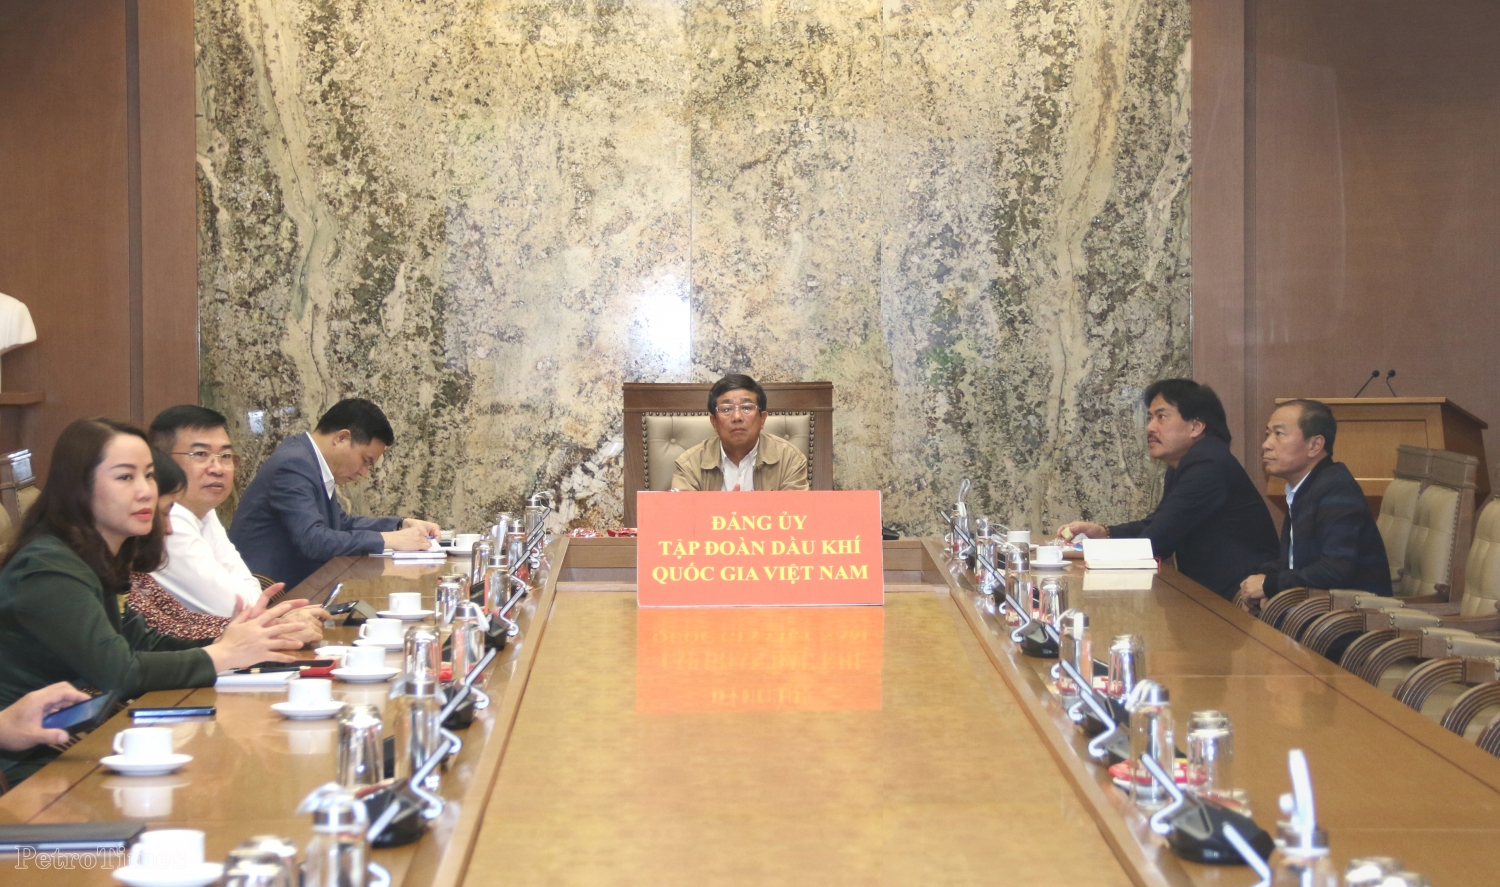 Đảng ủy Tập đoàn Dầu khí Quốc gia Việt Nam nghiên cứu, học tập nội dung cuốn sách của Tổng Bí thư về phòng, chống tham nhũng, tiêu cực